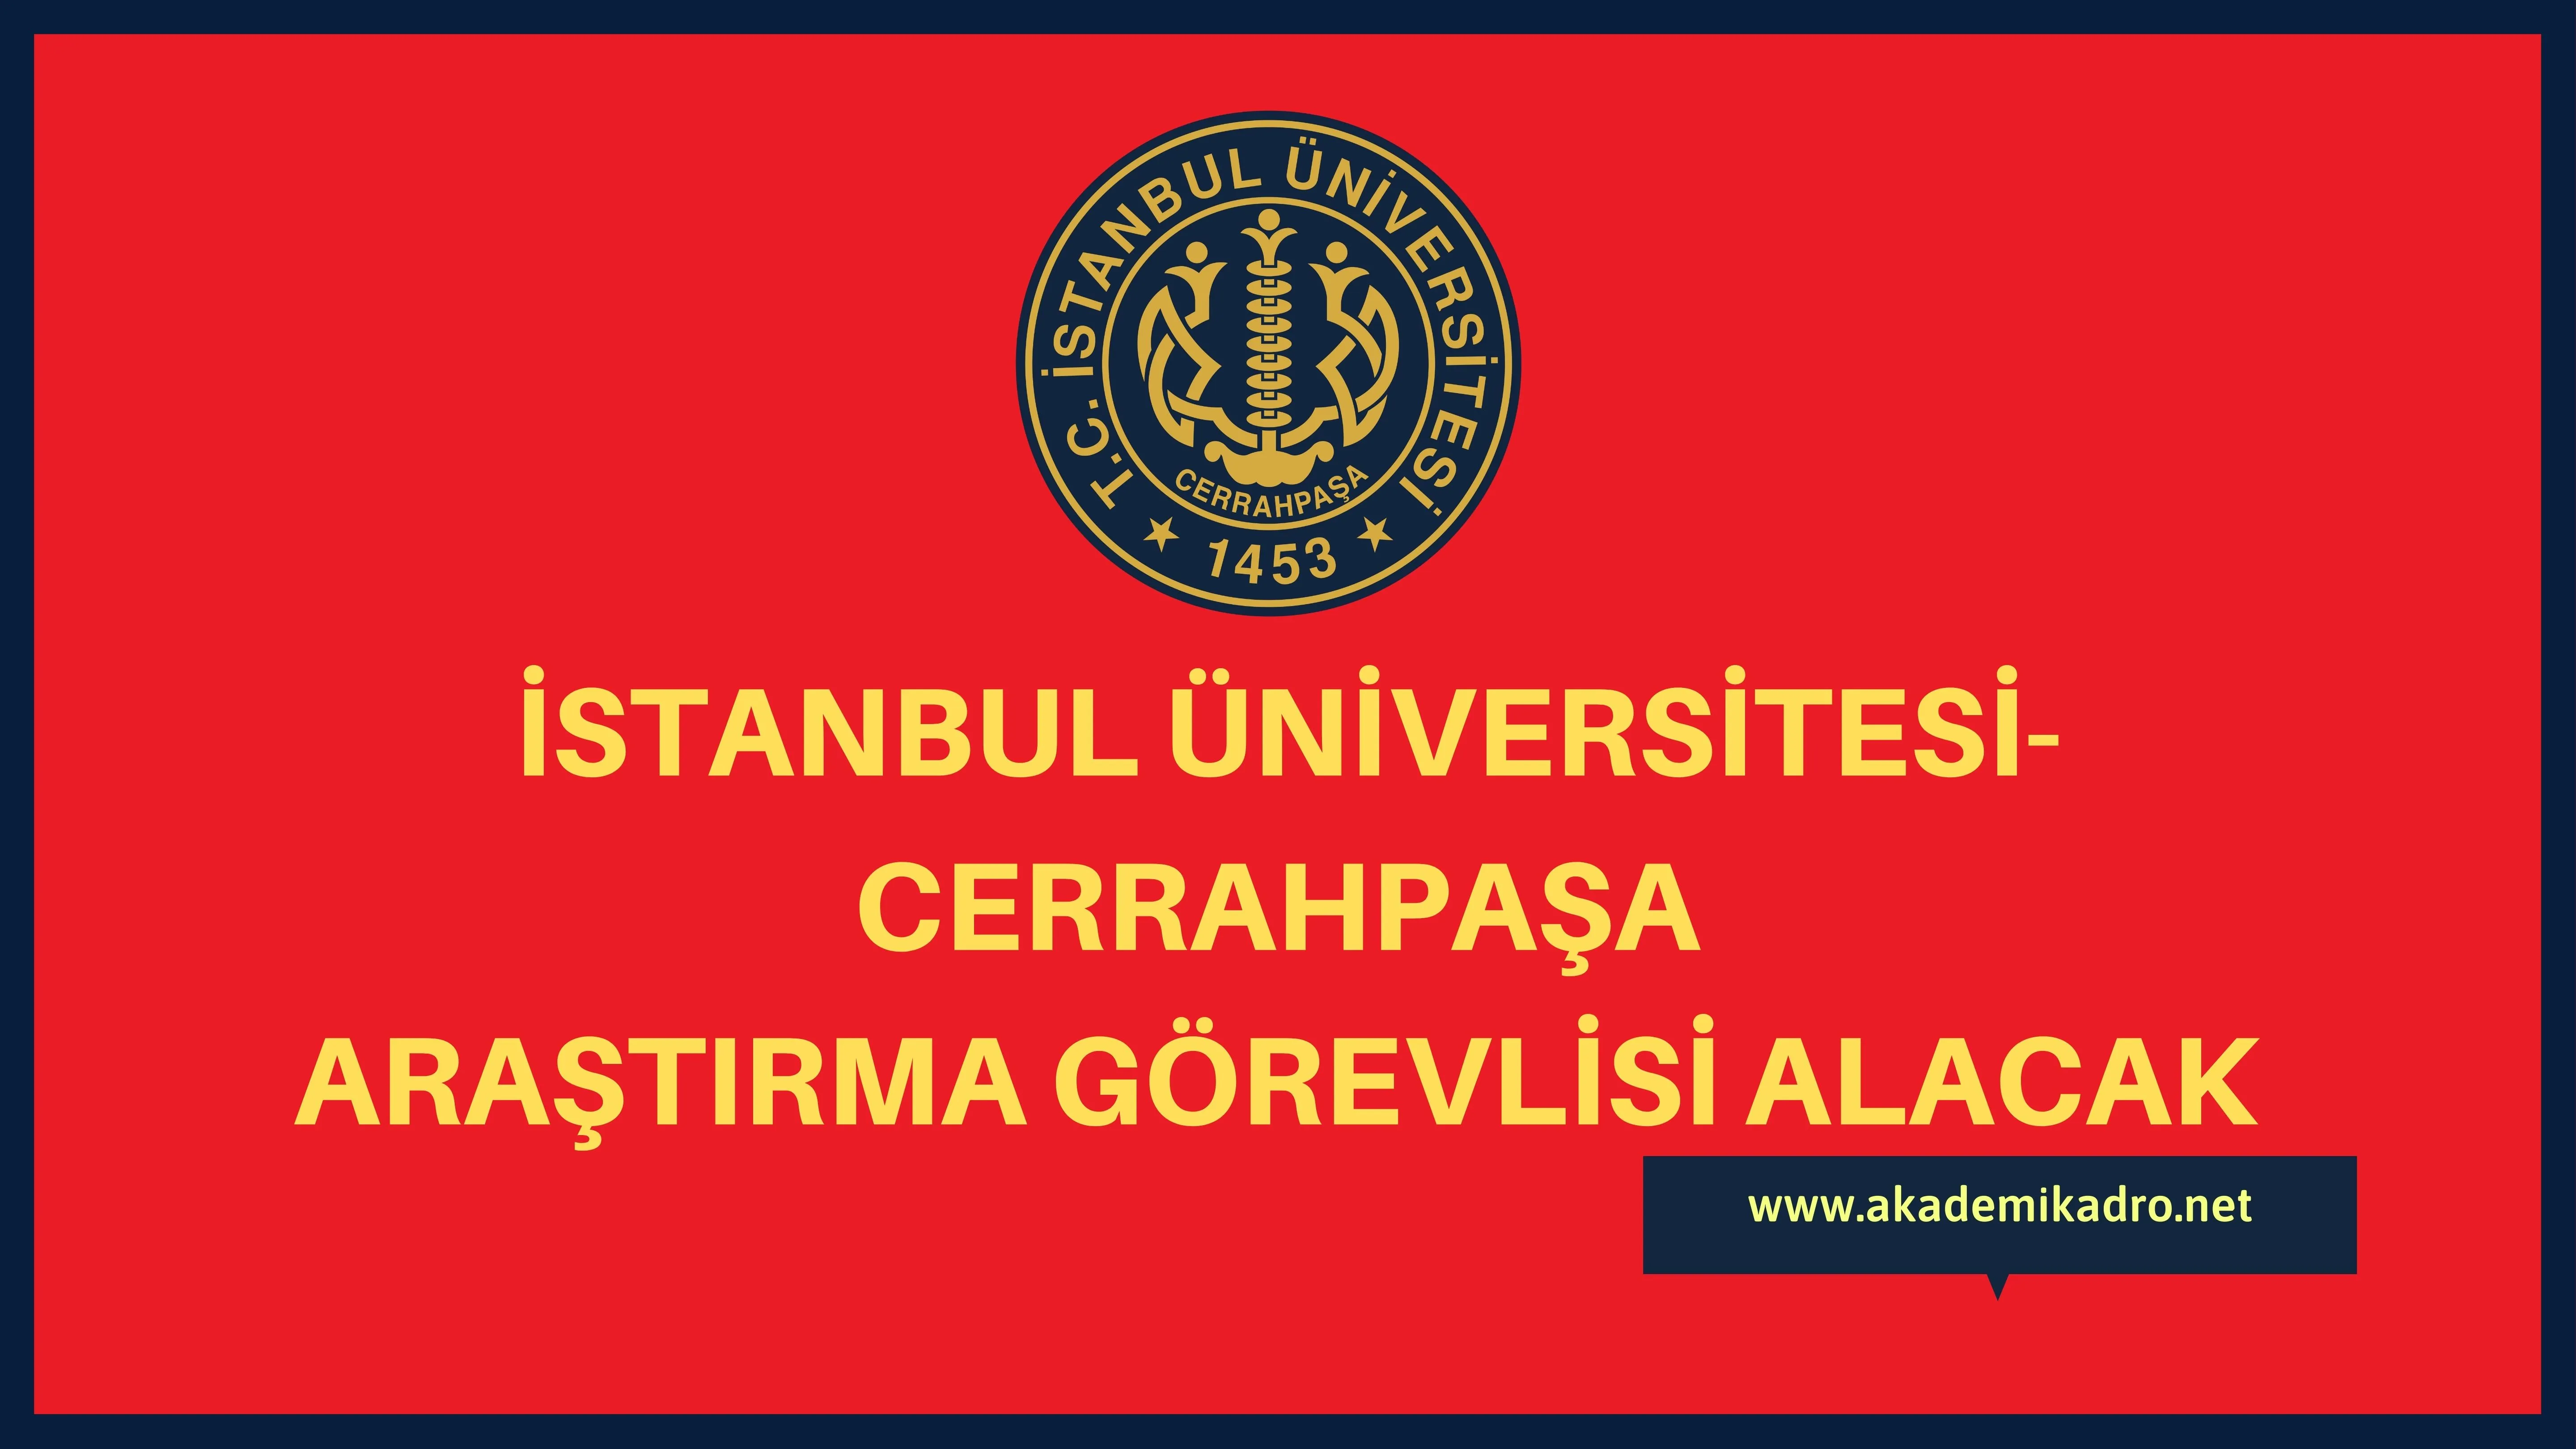 İstanbul Üniversitesi-Cerrahpaşa birçok alandan 33 Araştırma görevlisi alacak.